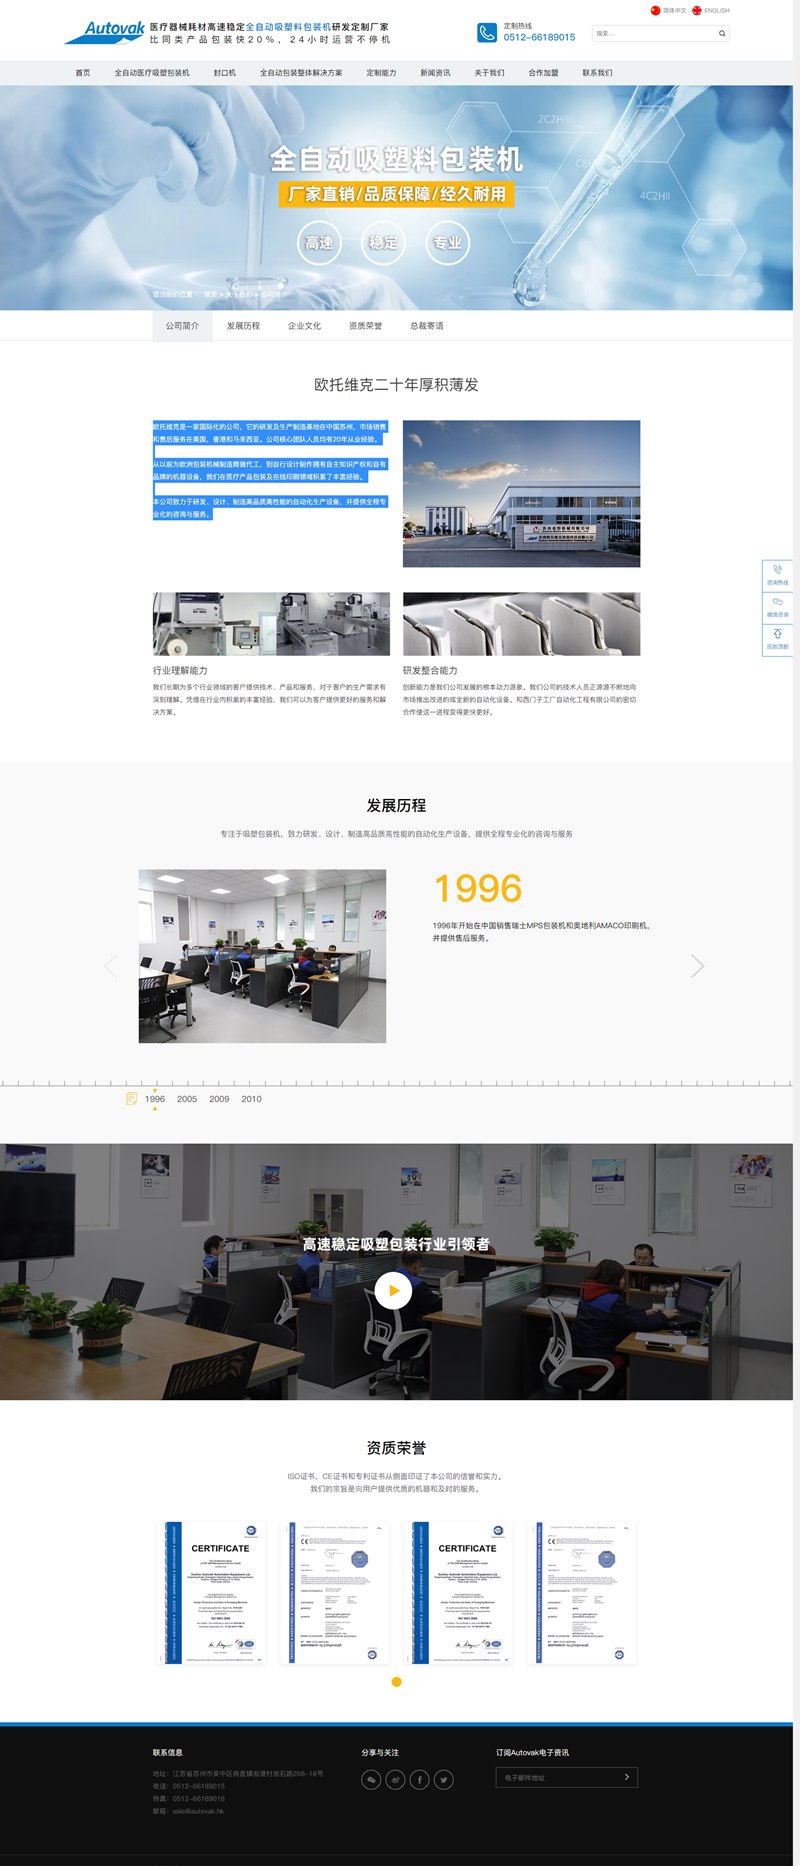 苏州欧托维克智能科技有限公司中英文网站设计效果.jpg